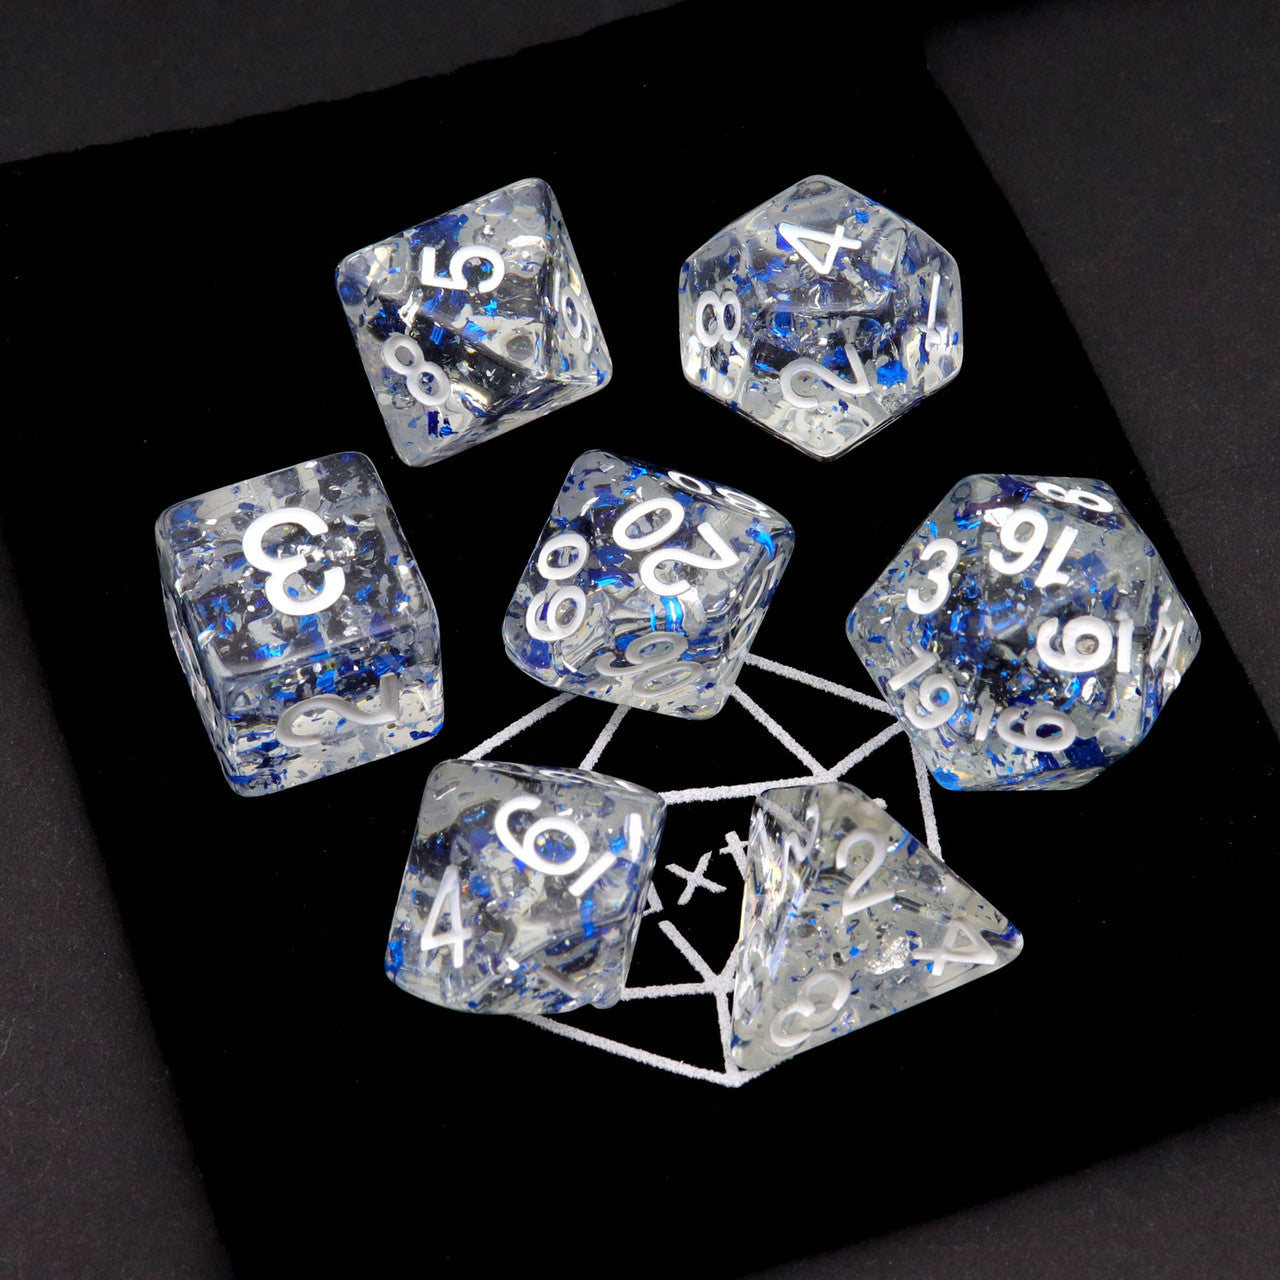 dnd dice, rpg dice, blue dice, dnd dice set, gold leaf dice, 